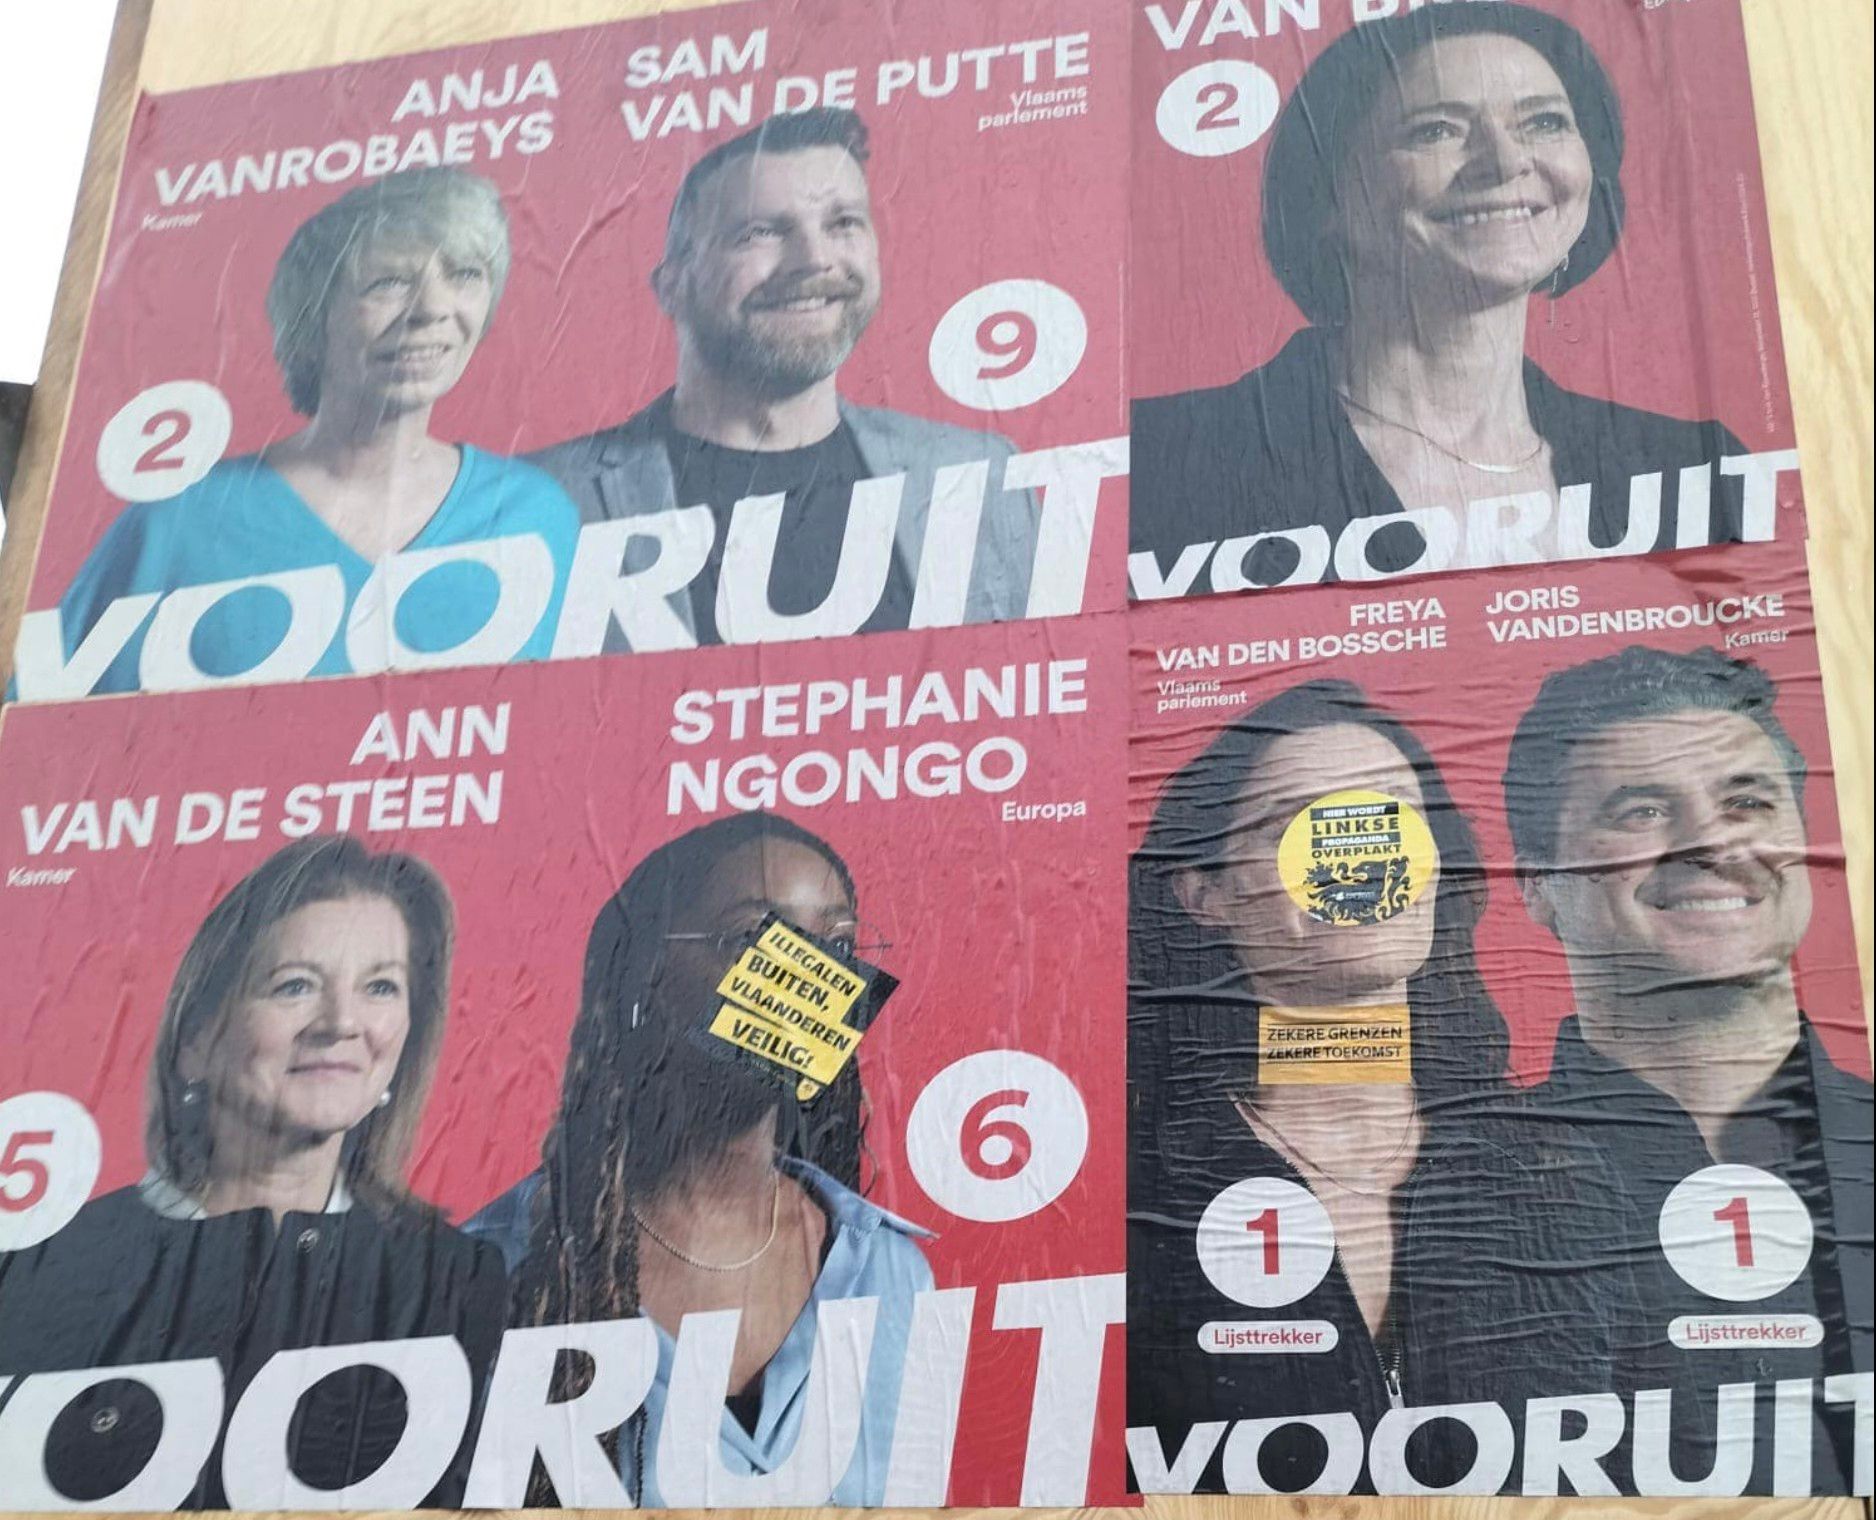 “Niet alleen in Aalst, ook in Denderleeuw worden de affiches van kandidaten bewust beschadigd. Puur vandalisme, enkel en alleen om wie ze zijn. Dat zullen we nooit aanvaarden. “ zegt Vooruit Aalst